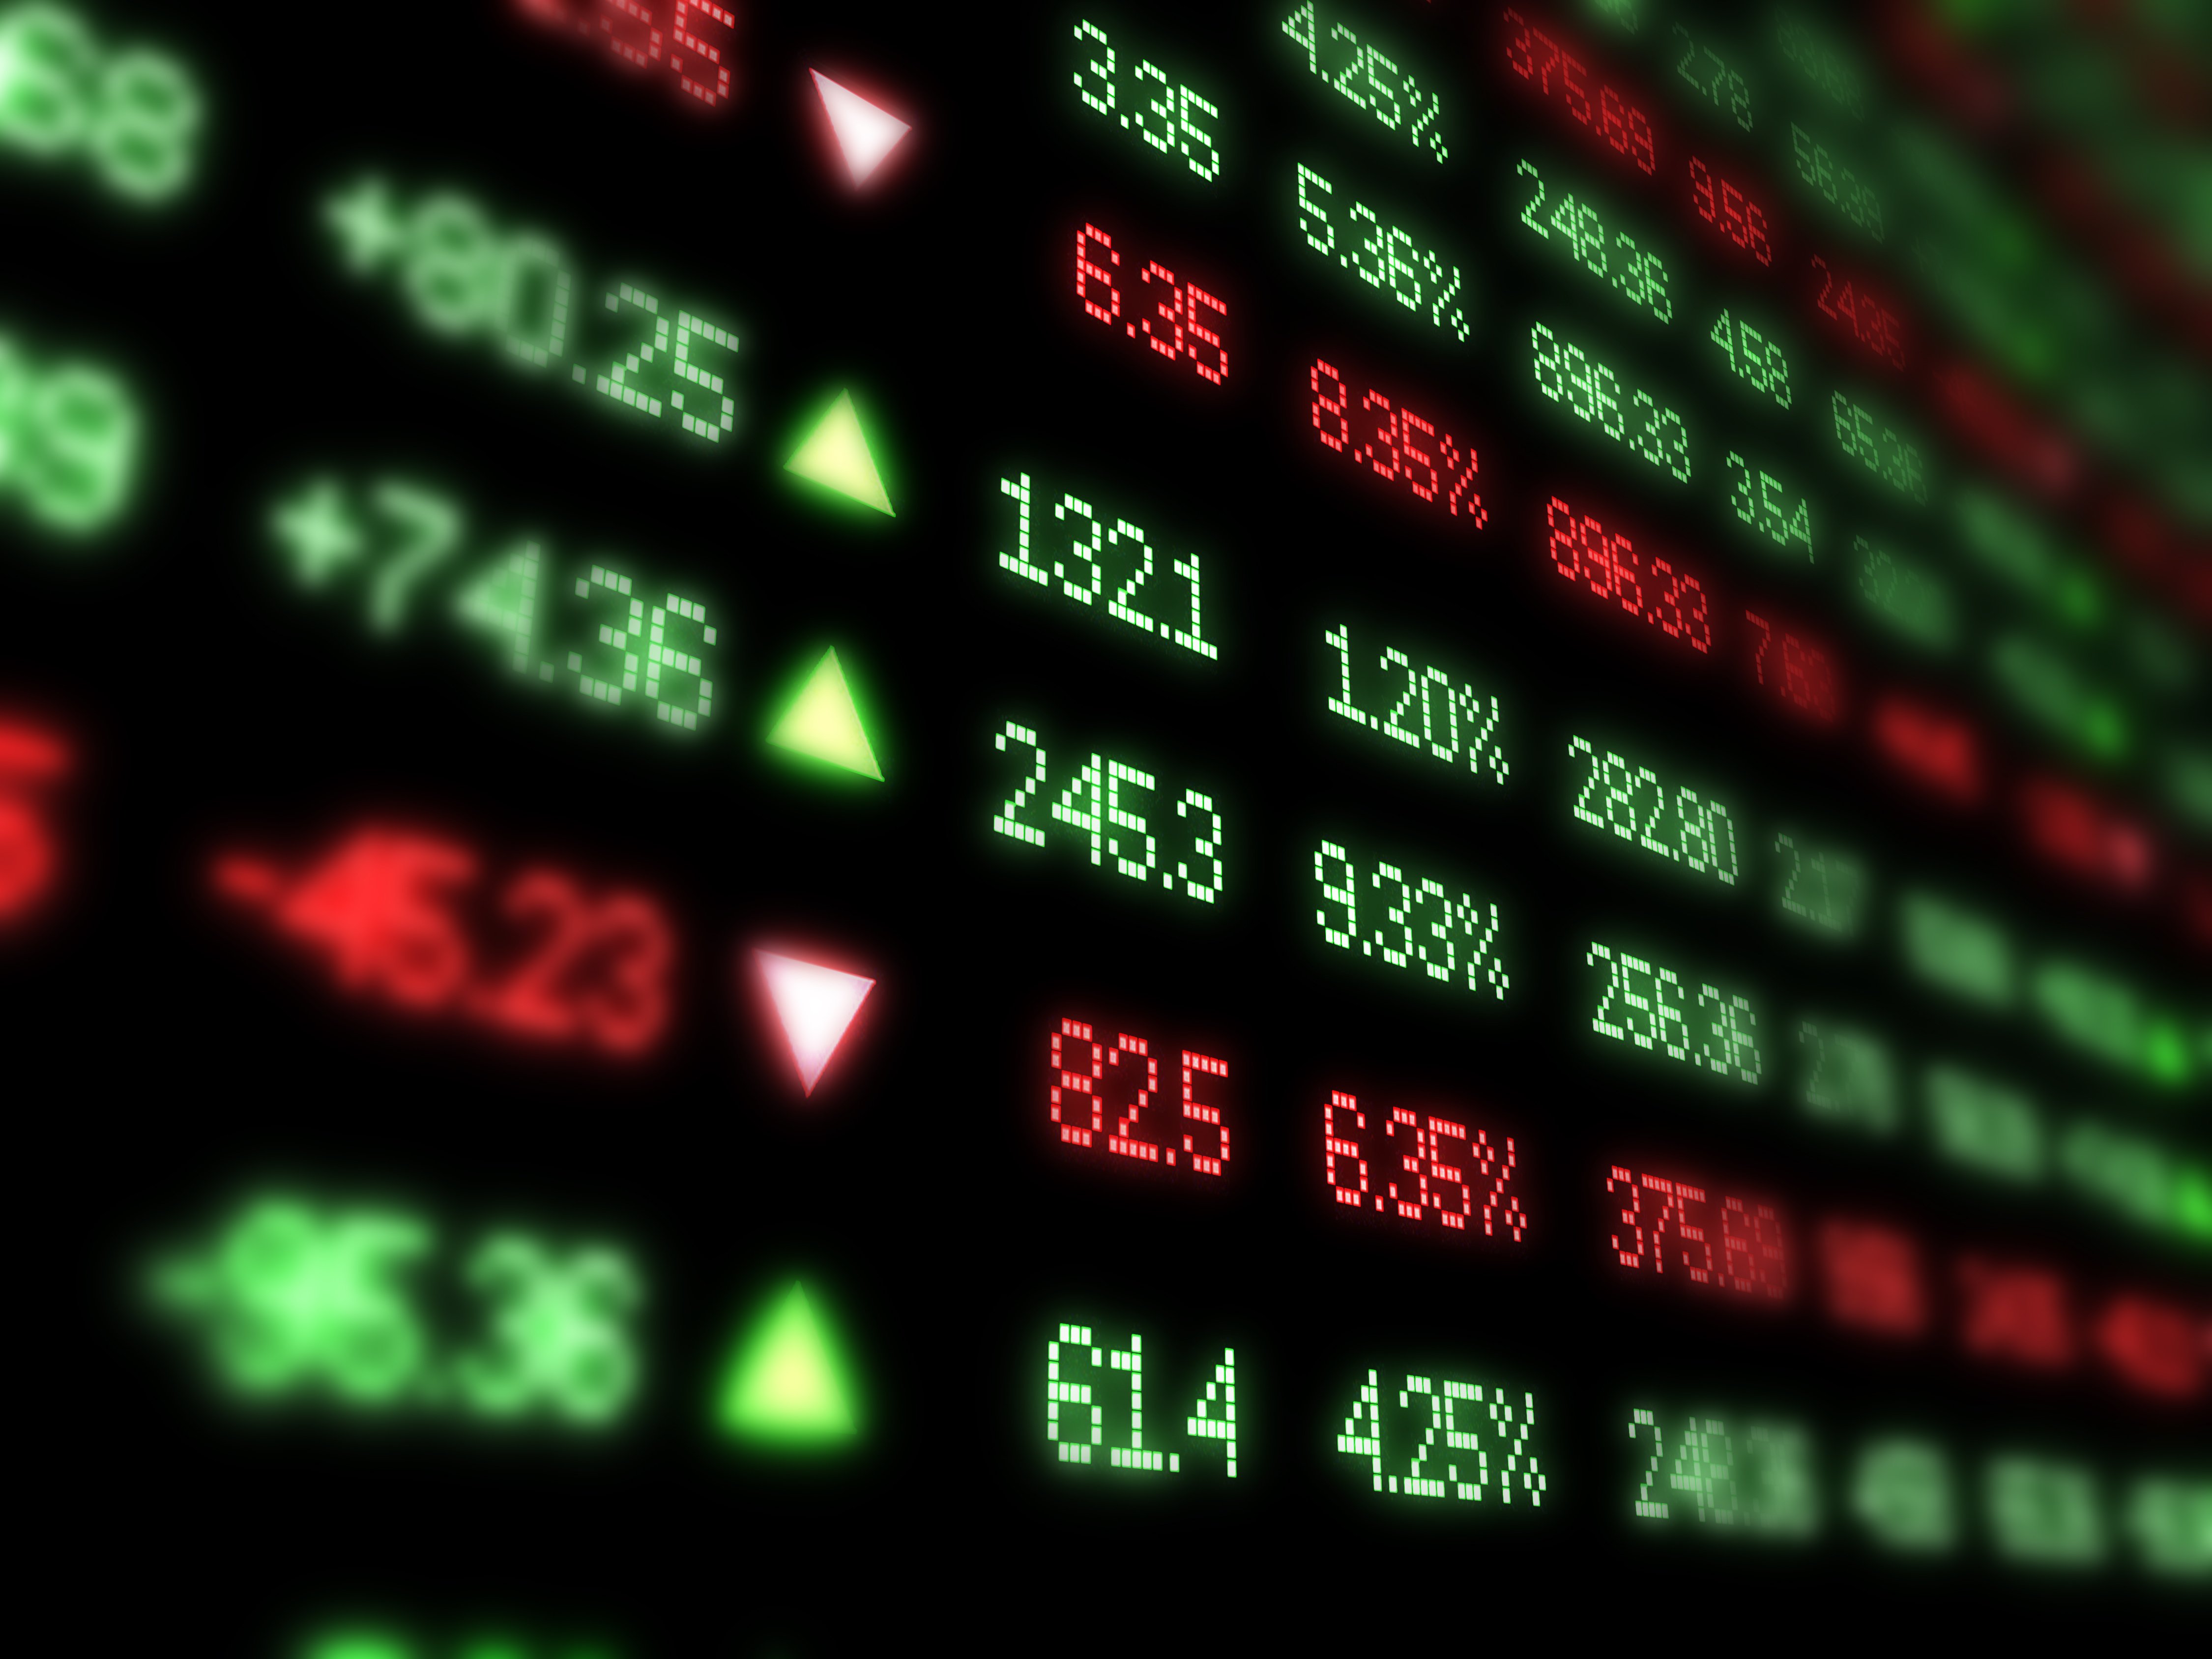 A closeup of a stock market ticker